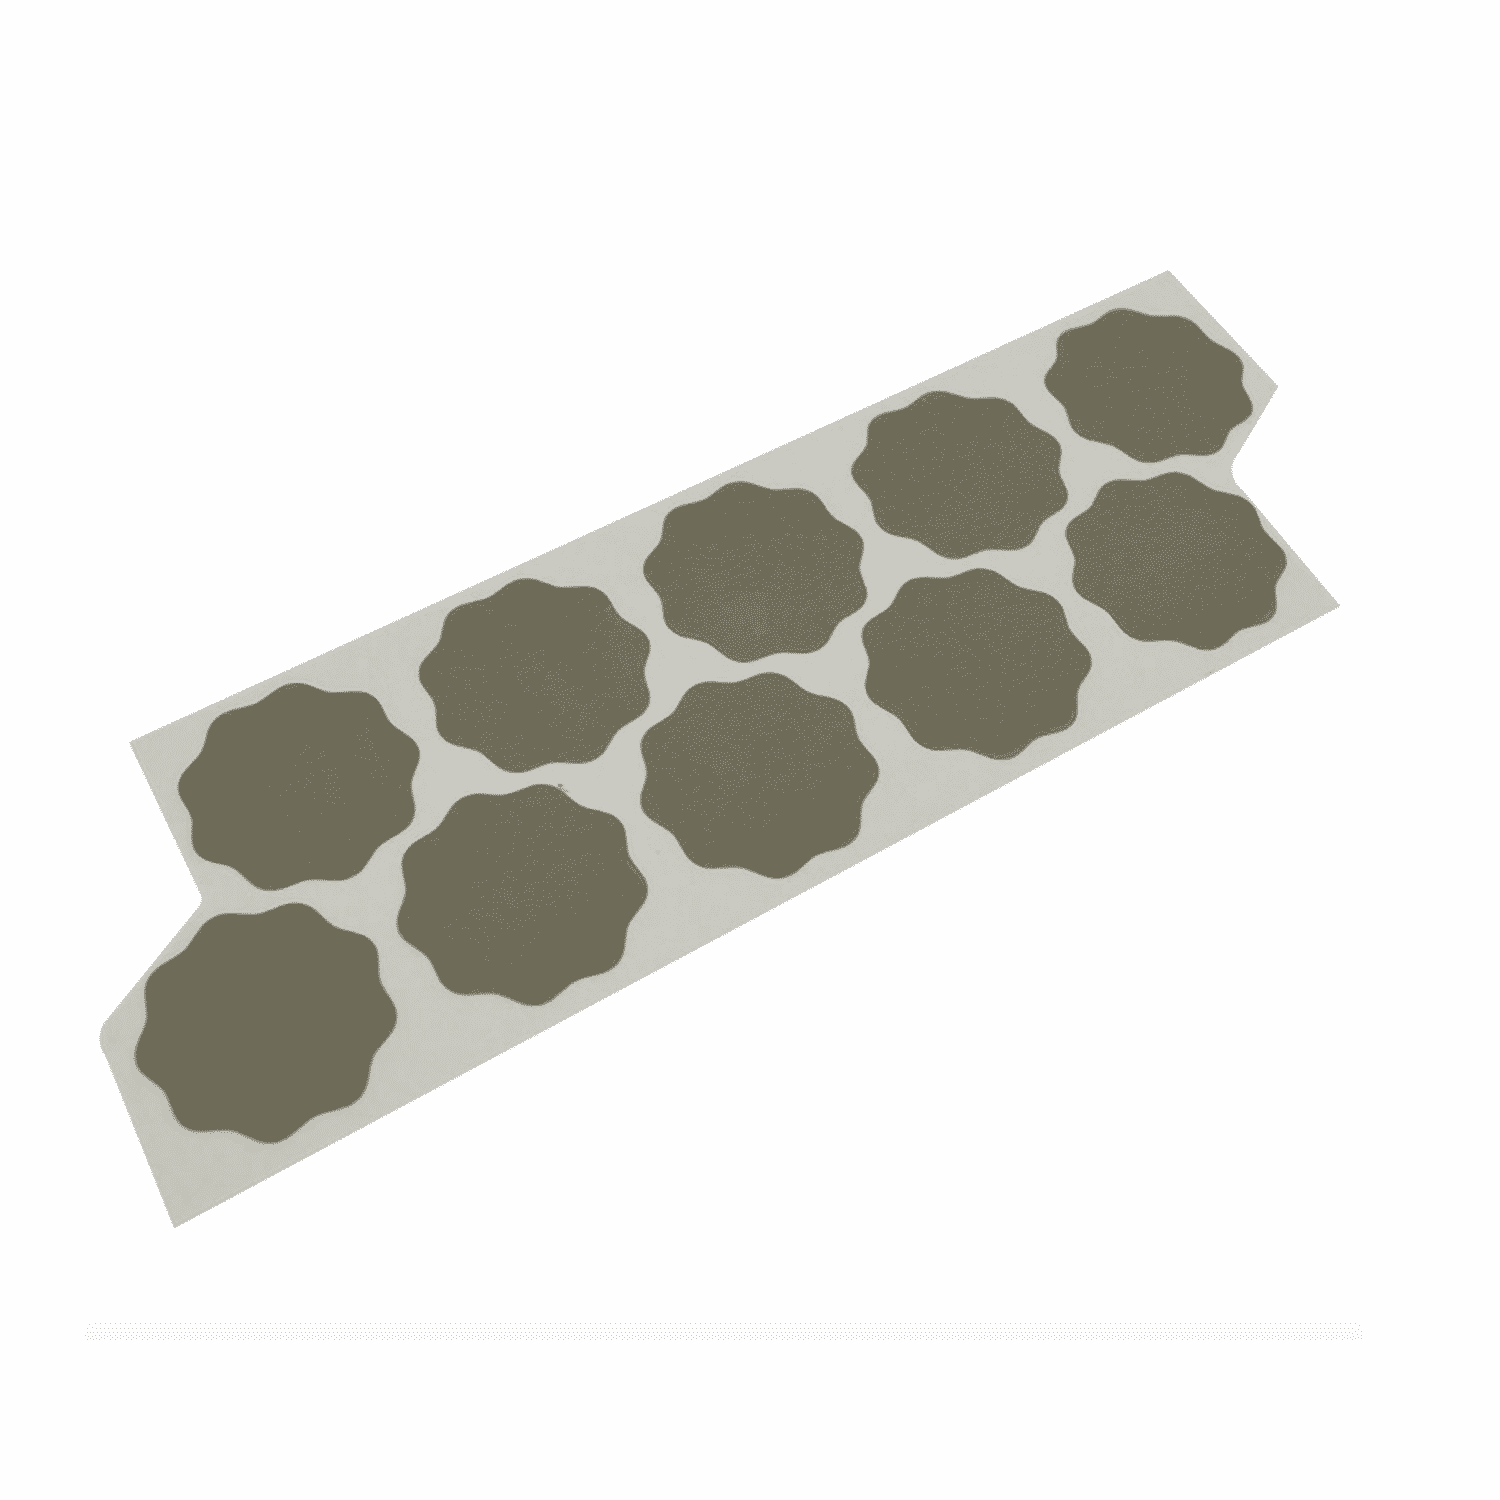 [9.45520/10] Disque à poncer en marguerite autocollante - Rupes Nano Abrasive Discs (Planche de 10 marguerites P2000)